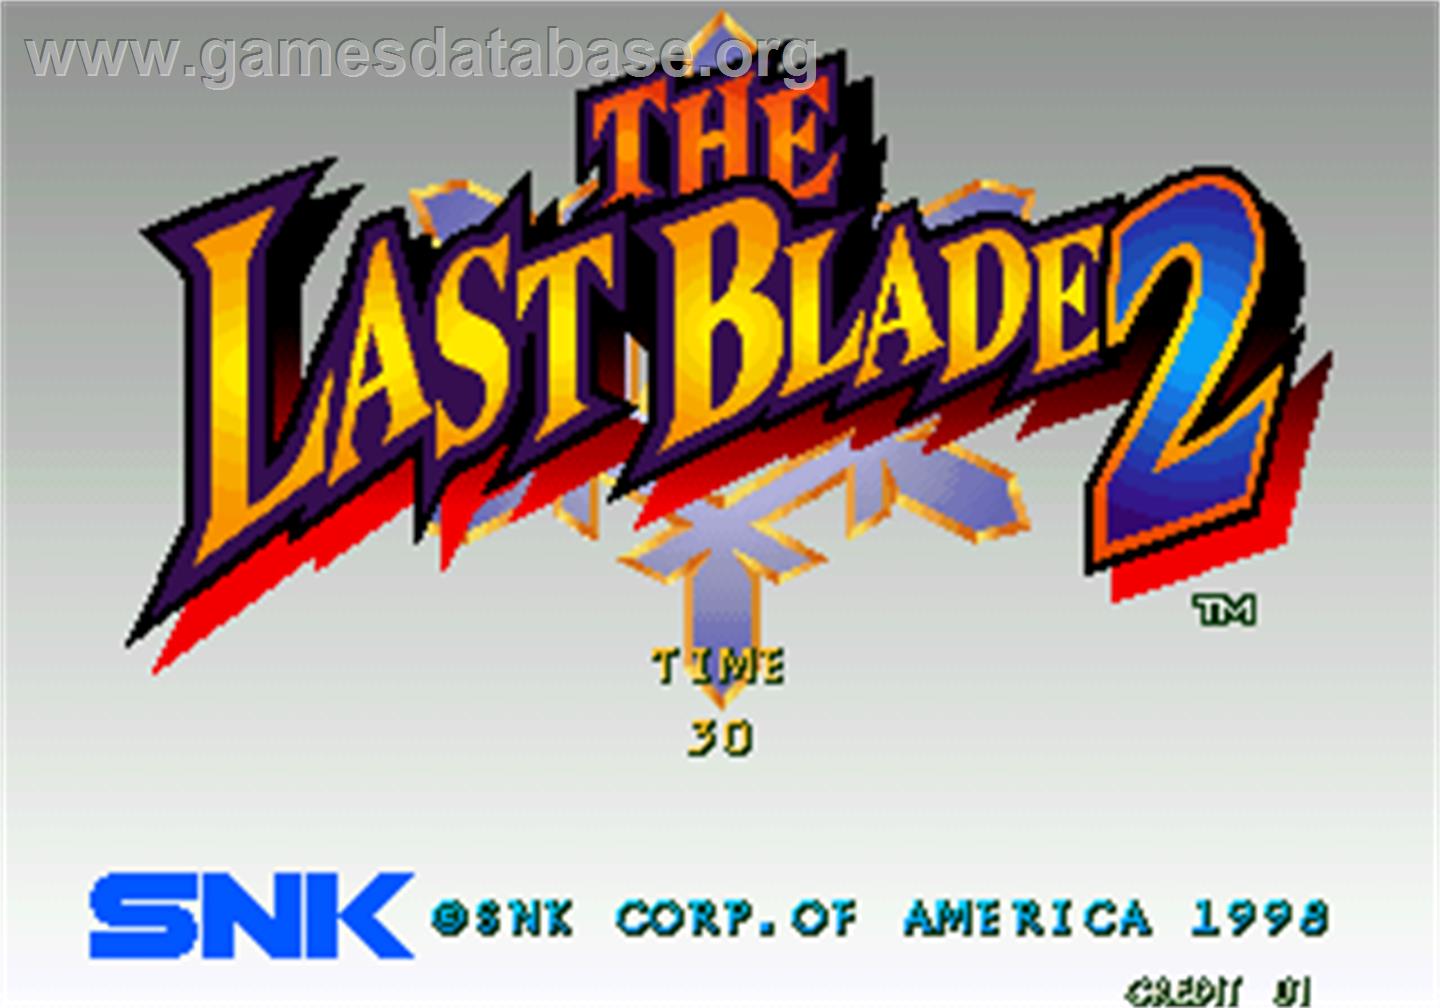 The Last Blade 2 / Bakumatsu Roman - Dai Ni Maku Gekka no Kenshi - Arcade - Artwork - Title Screen